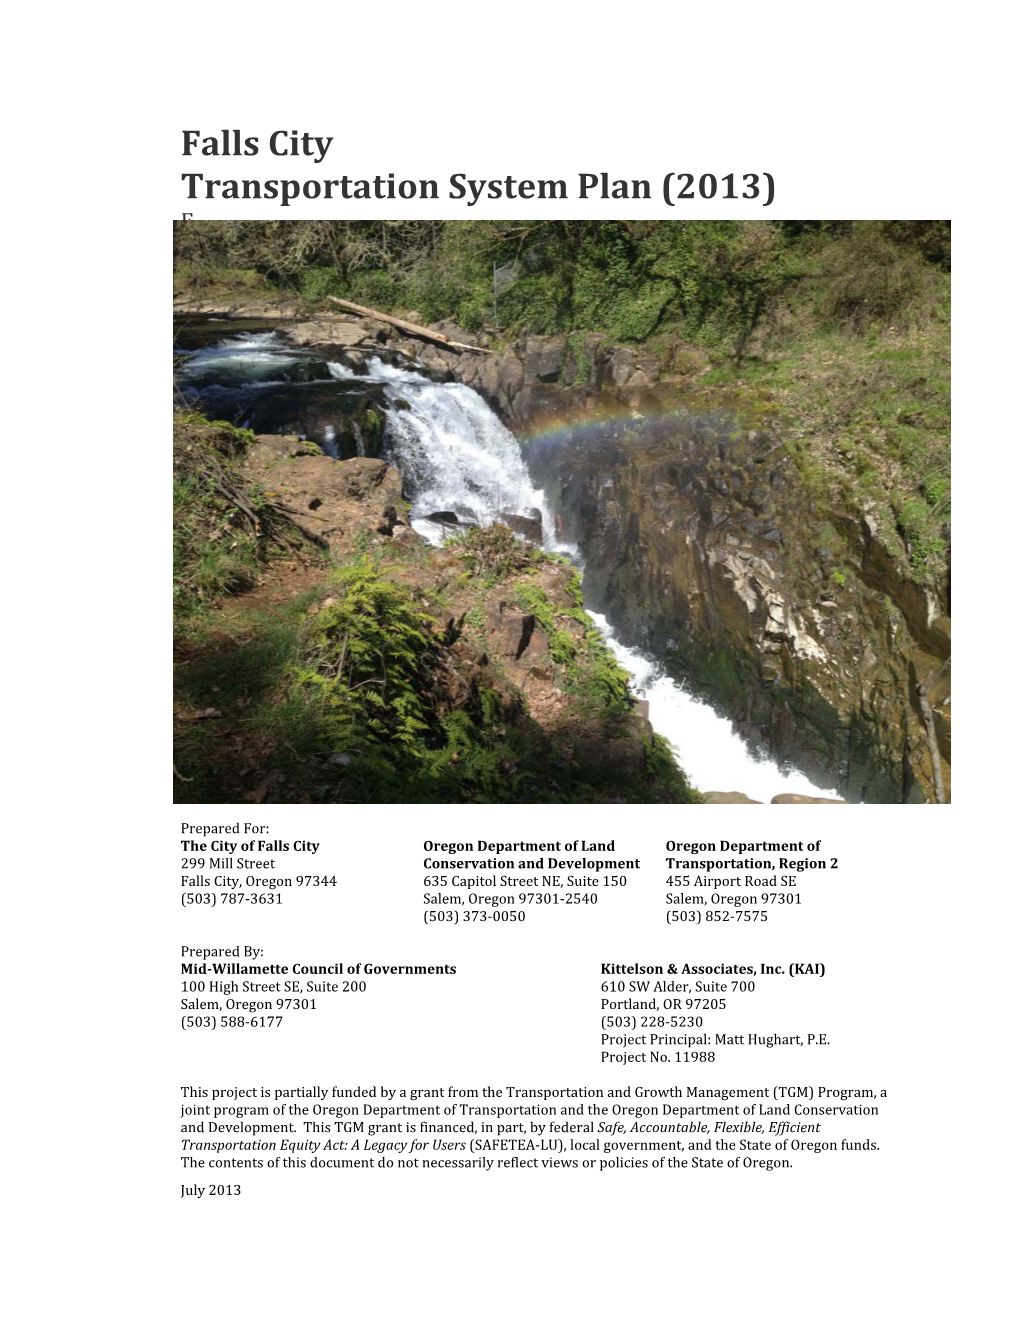 Falls City Transportation System Plan (2013) F a L L S